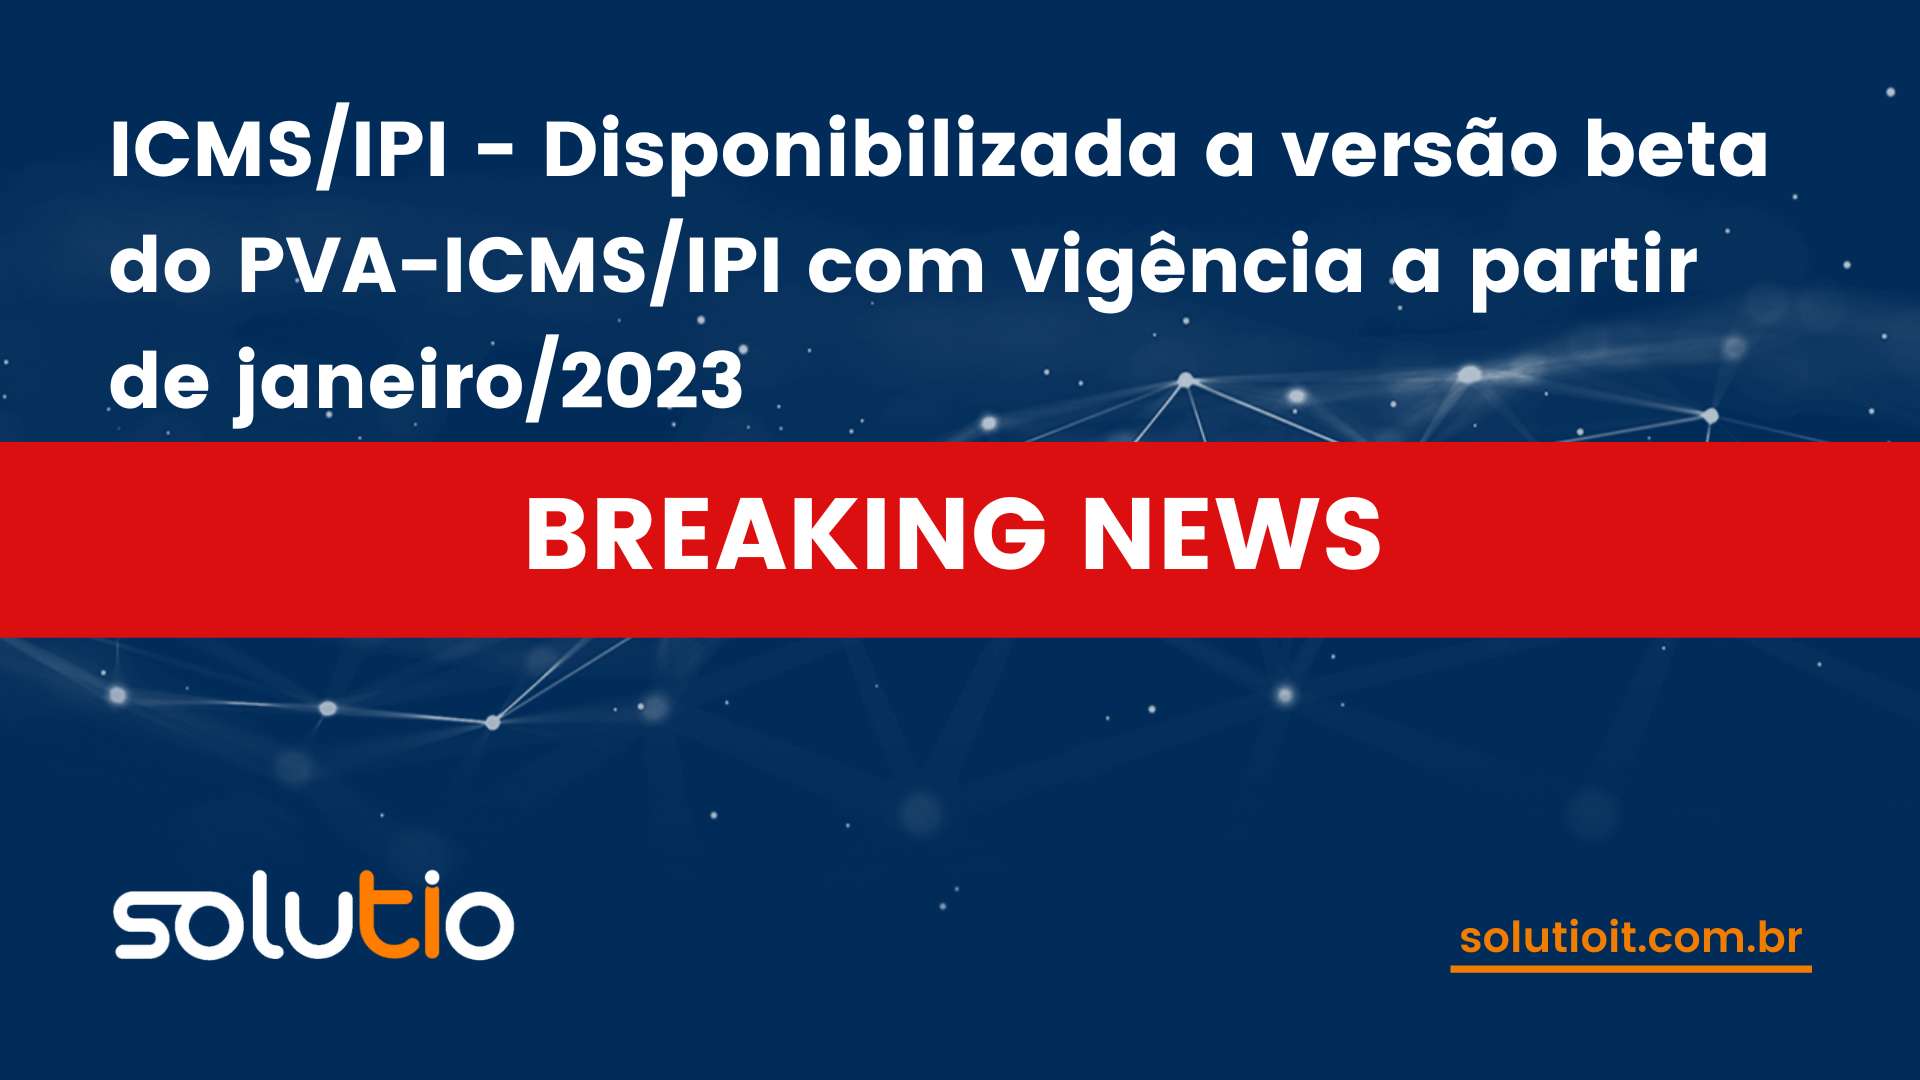 ICMS/IPI - Disponibilizada a versão beta do PVA-ICMS/IPI com vigência a partir de janeiro/2023